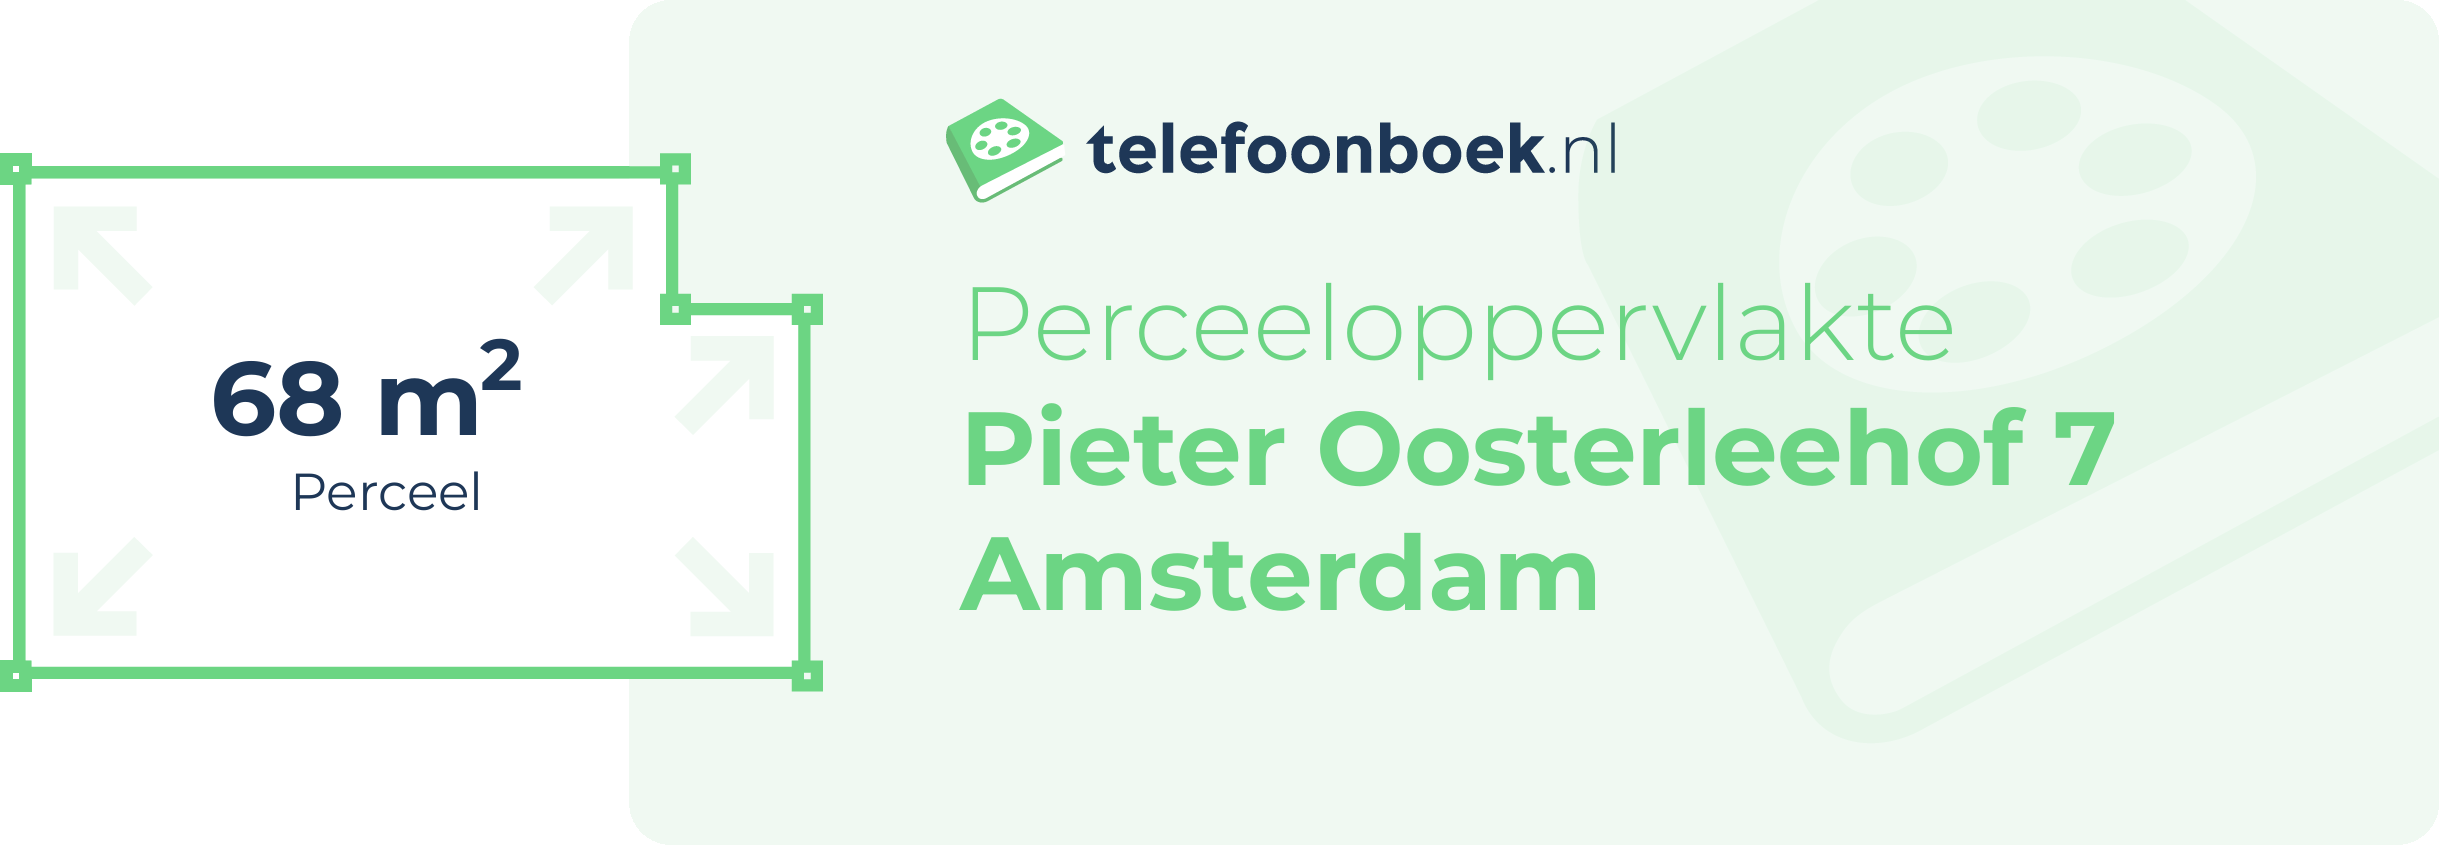 Perceeloppervlakte Pieter Oosterleehof 7 Amsterdam